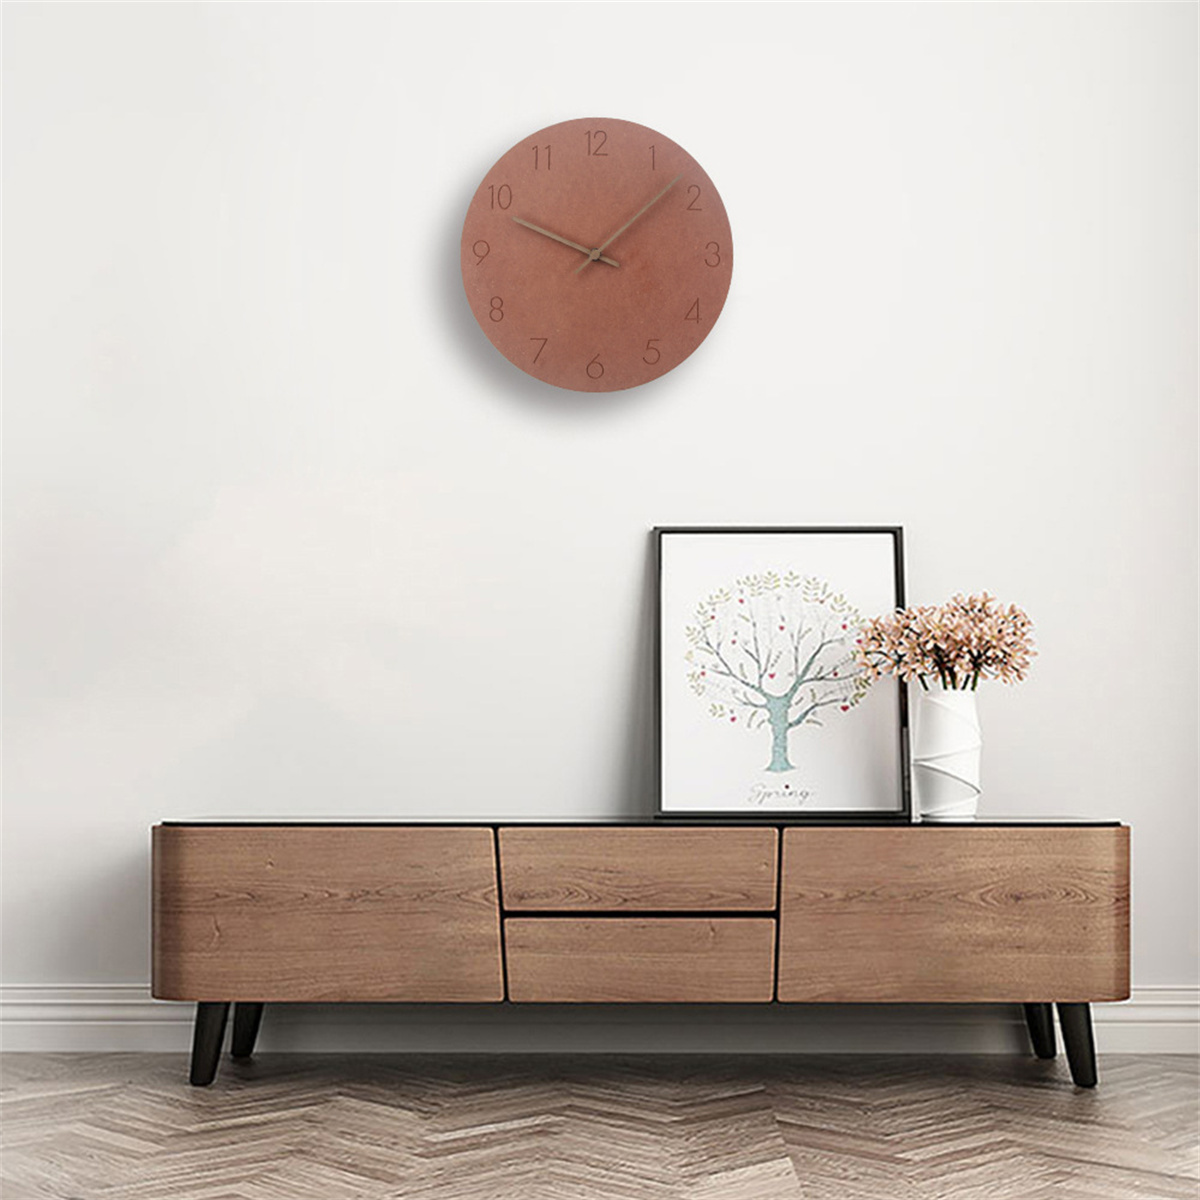 SYNTEK Uhr Wohnzimmer Wanduhr aus hängen minimalistische kreativ Uhren Holz stumm Wanduhr braun